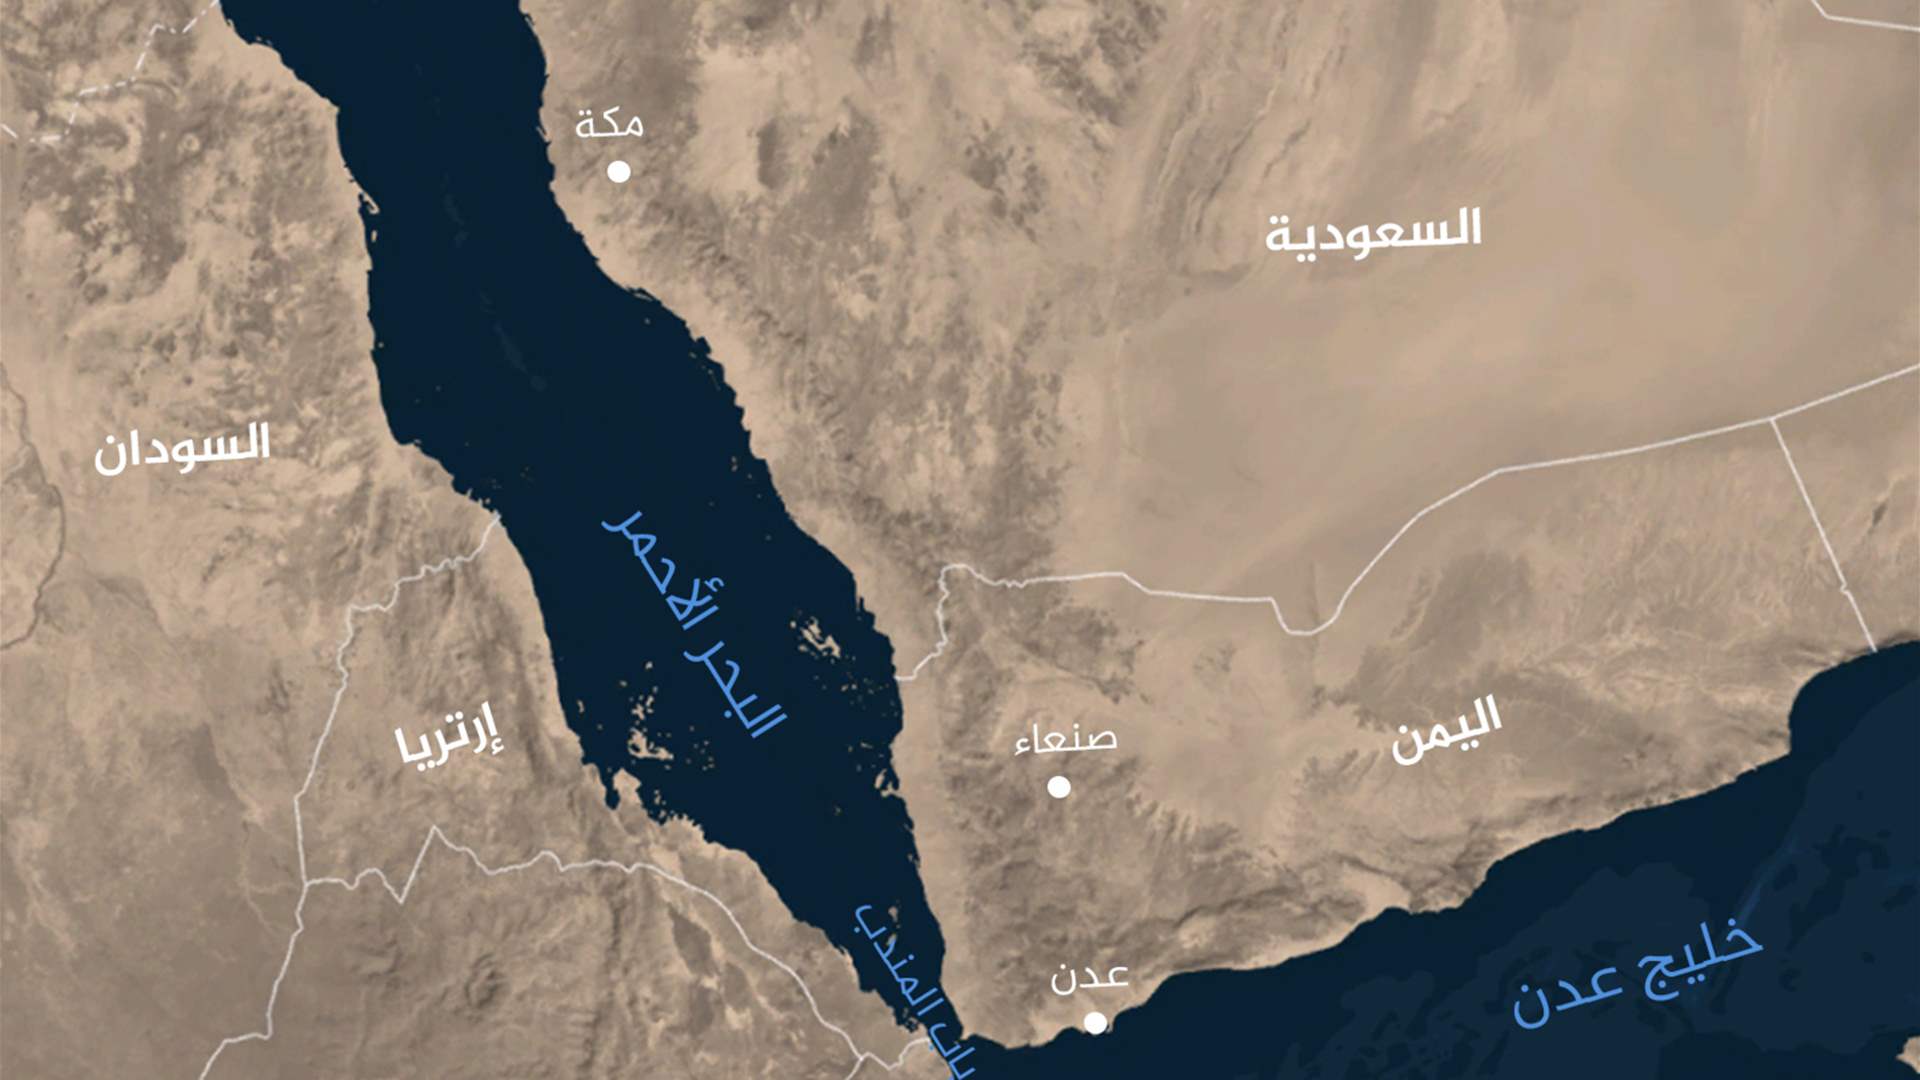 سفينة تجارية تطلق نداء استغاثة شرقي عدن في اليمن